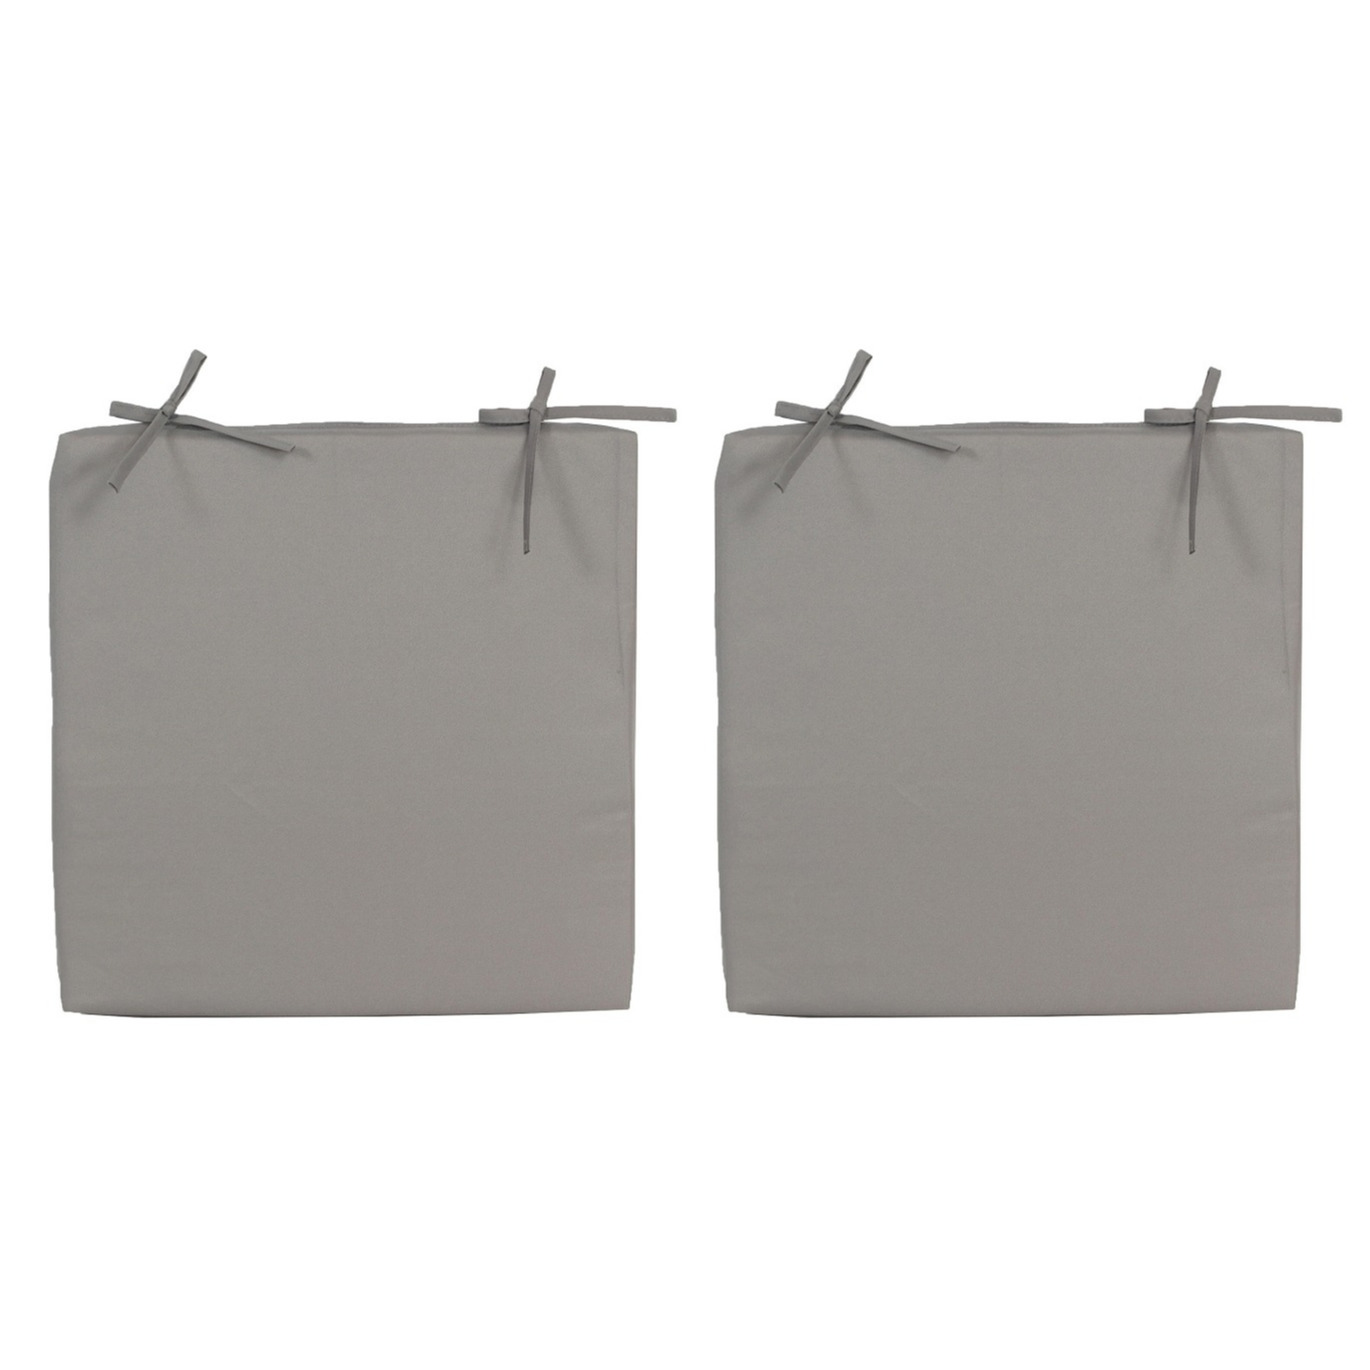 2x Stoelkussens voor binnen en buiten in de kleur grijs 40 x 40 cm Tuinkussens voor buitenstoelen.